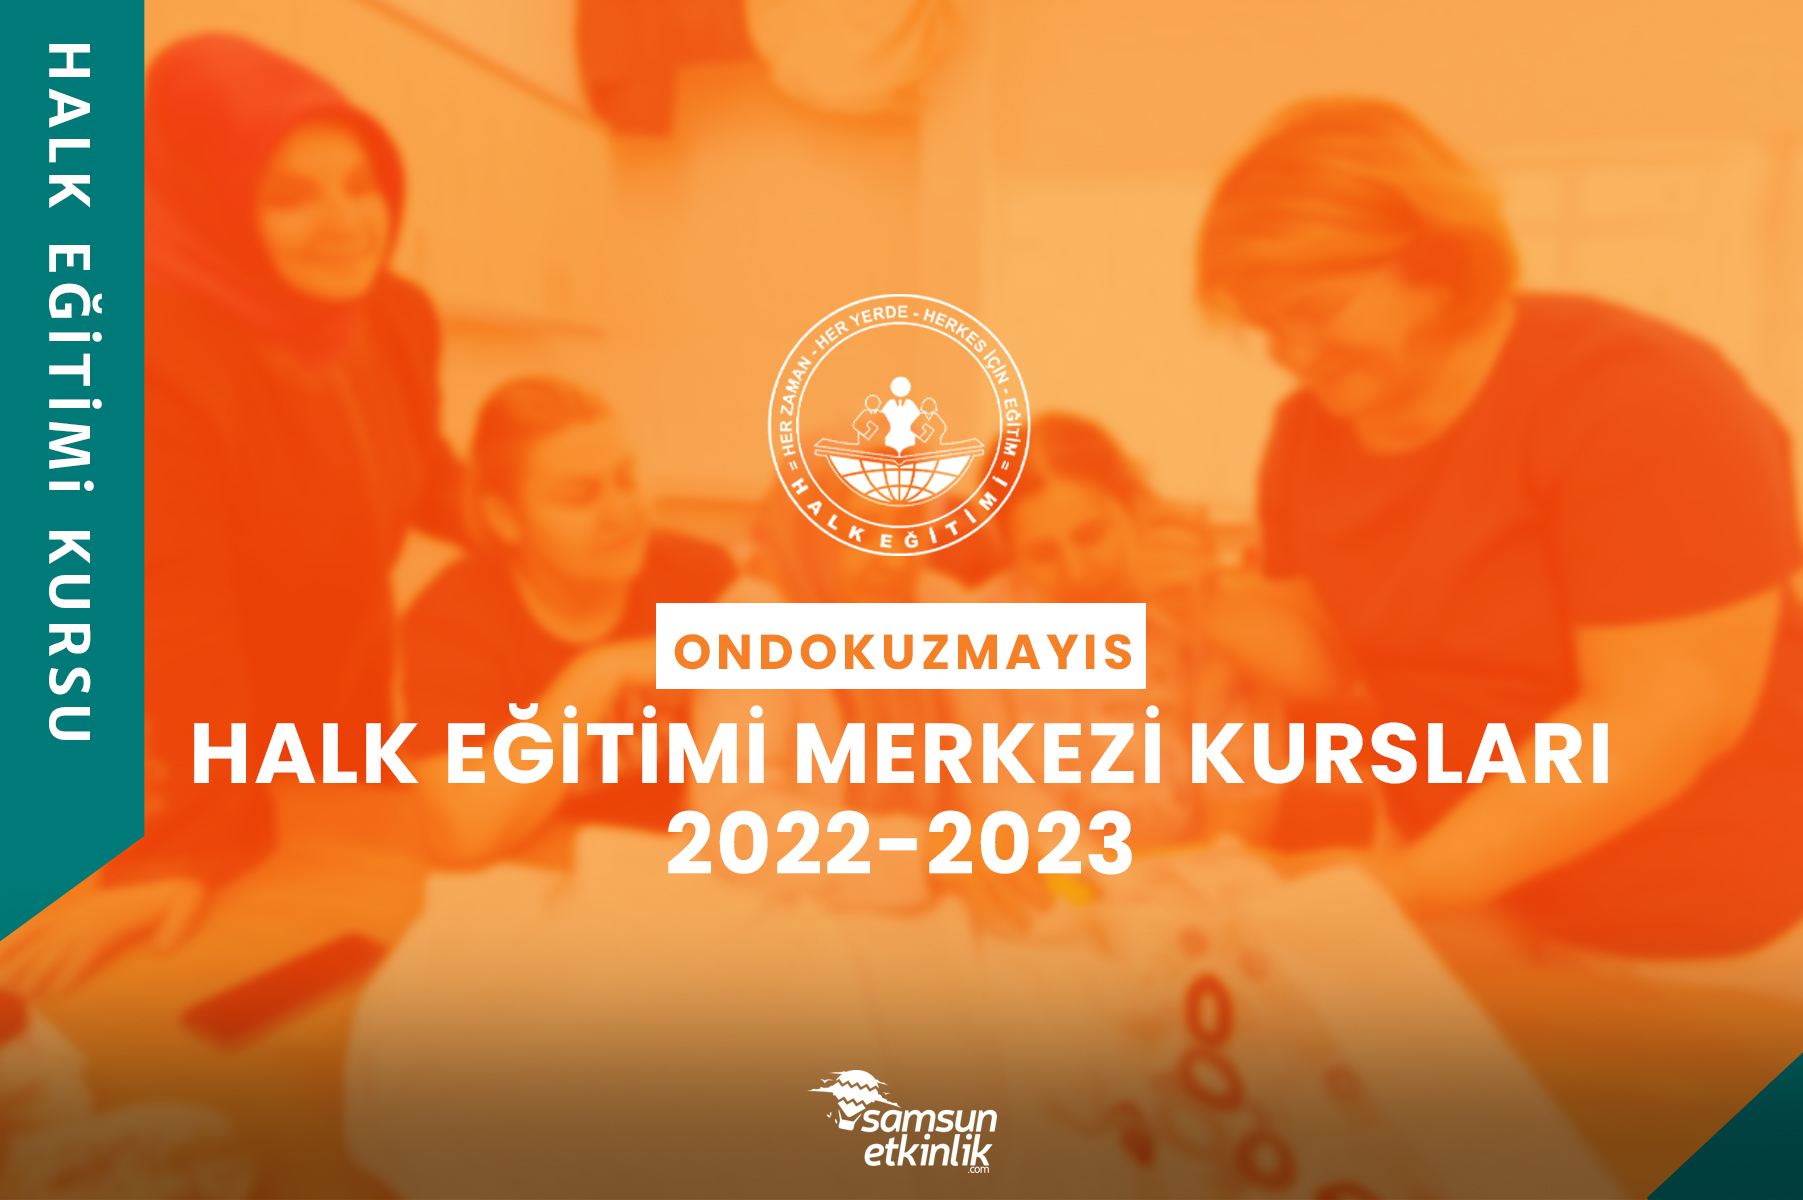 Samsun Ondokuzmayıs Halk Eğitimi Merkezi Kursları 2022-2023